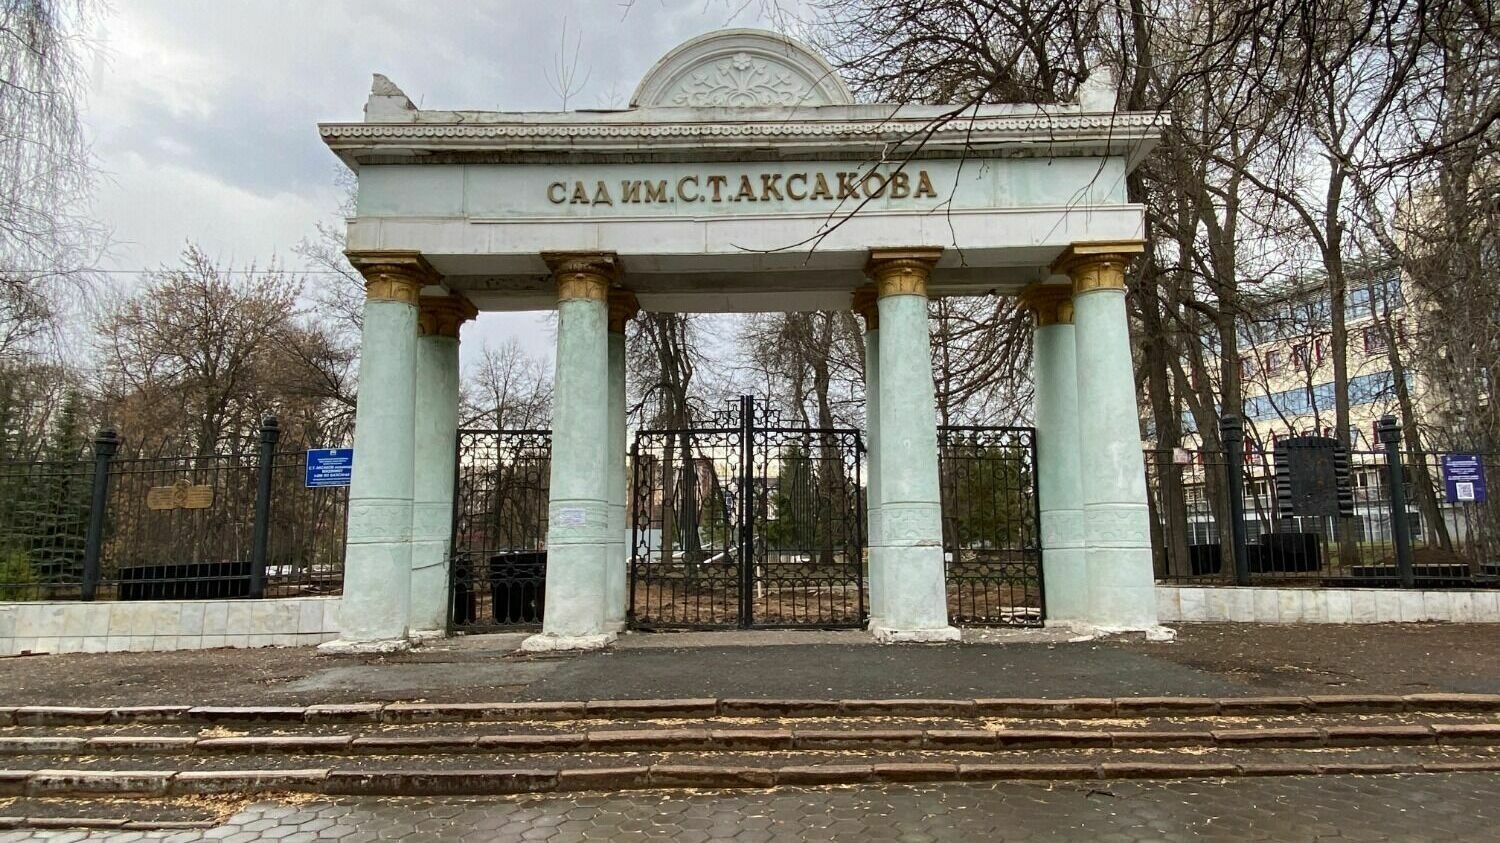 Глава Башкультнаследия отрицает снос арки входа в реконструируемый сад Аксакова в Уфе